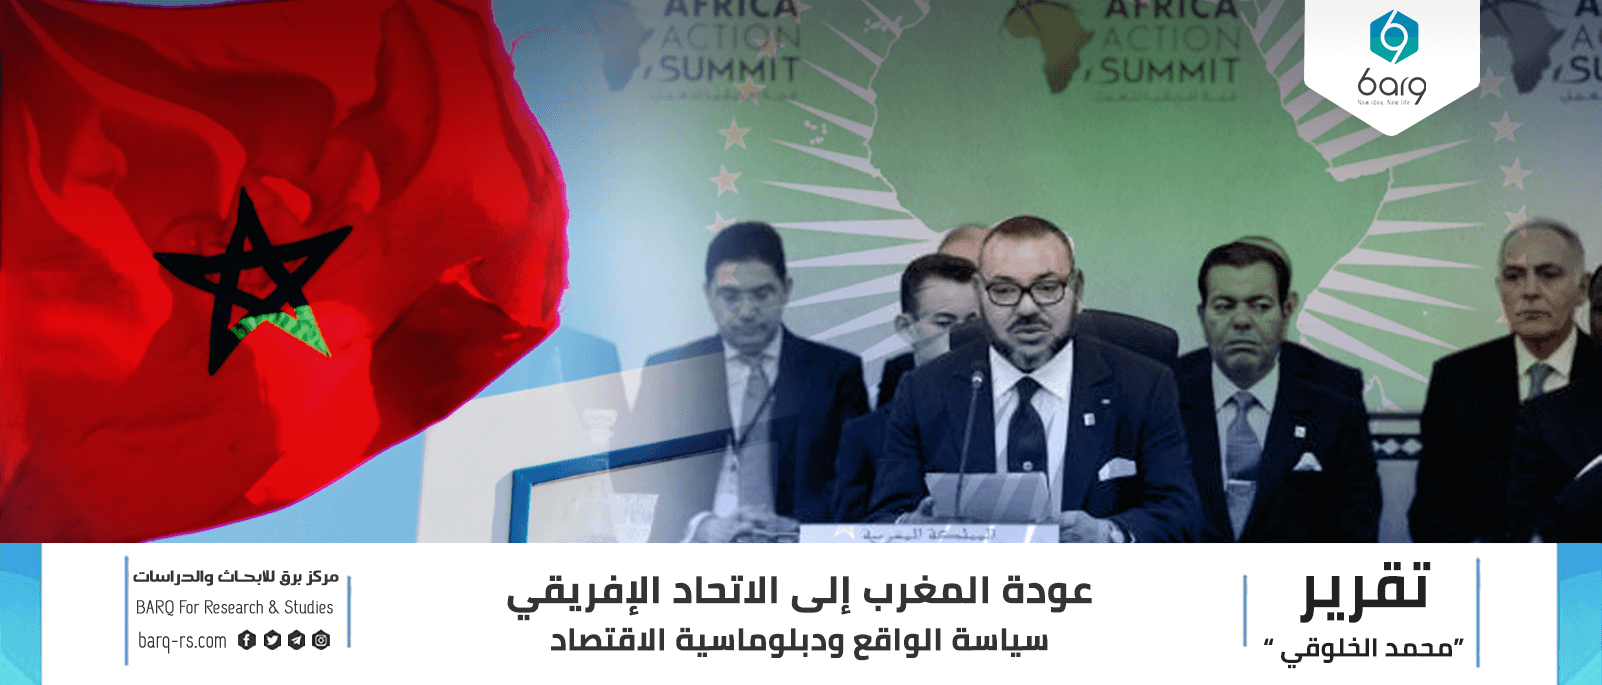 عودة المغرب إلى الاتحاد الإفريقي